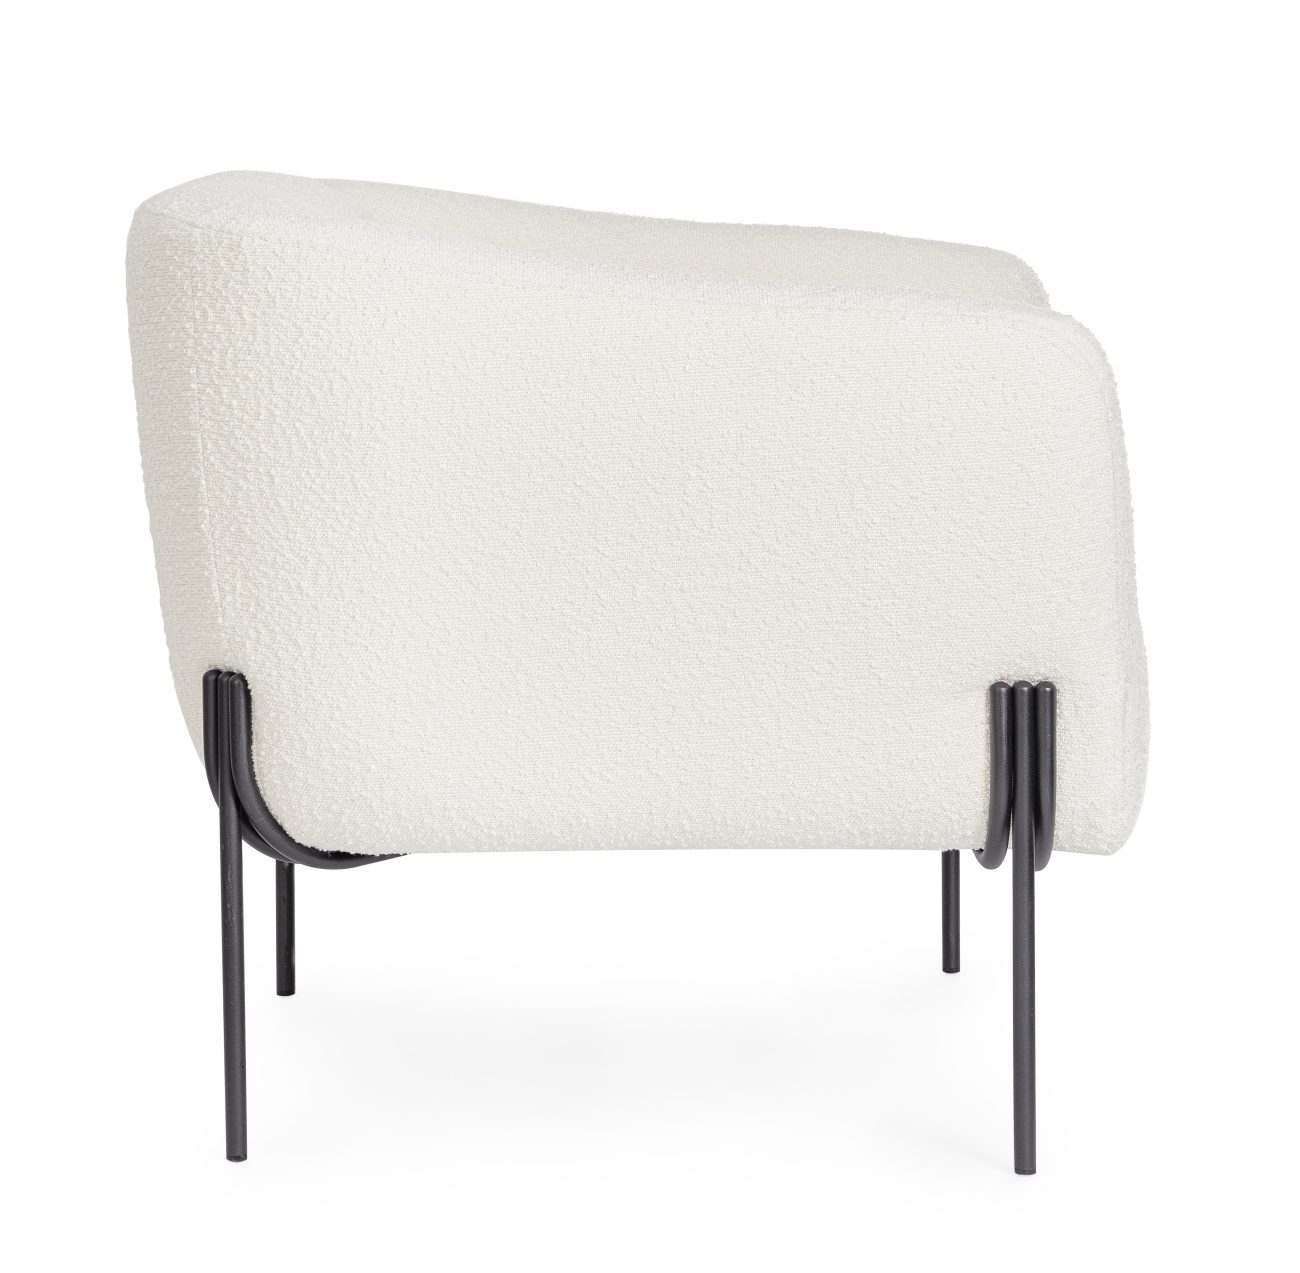 Der Sessel Claudine überzeugt mit seinem modernen Stil. Gefertigt wurde er aus Bouclè-Stoff, welcher einen weißen Farbton besitzt. Das Gestell ist aus Metall und hat eine schwarze Farbe. Der Sessel verfügt über eine Armlehne.